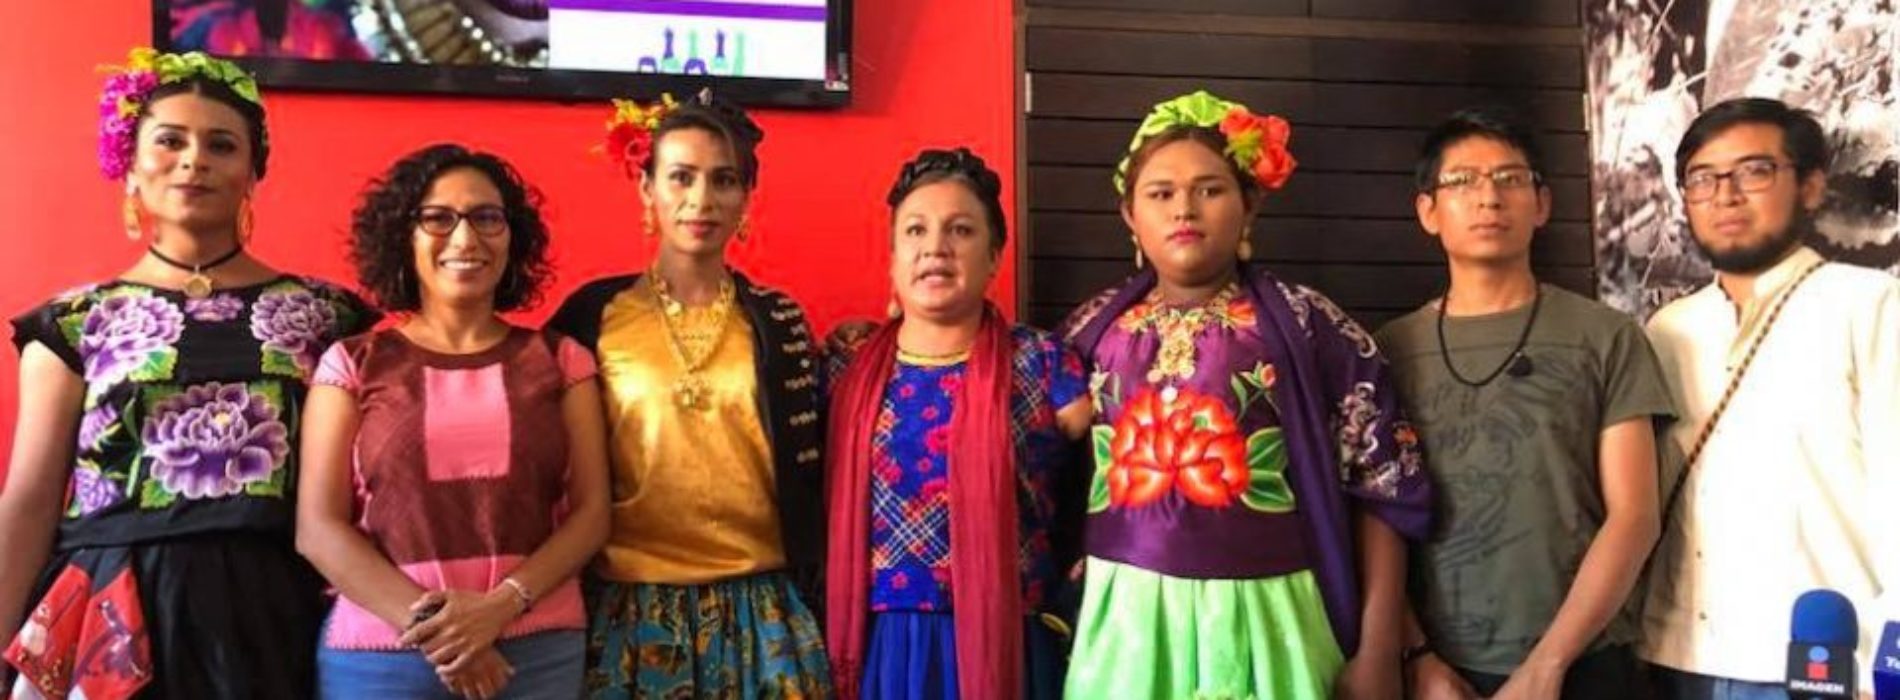 Instituto Electoral de Oaxaca cancela 17 candidaturas de
hombres que se hicieron pasar por transgénero